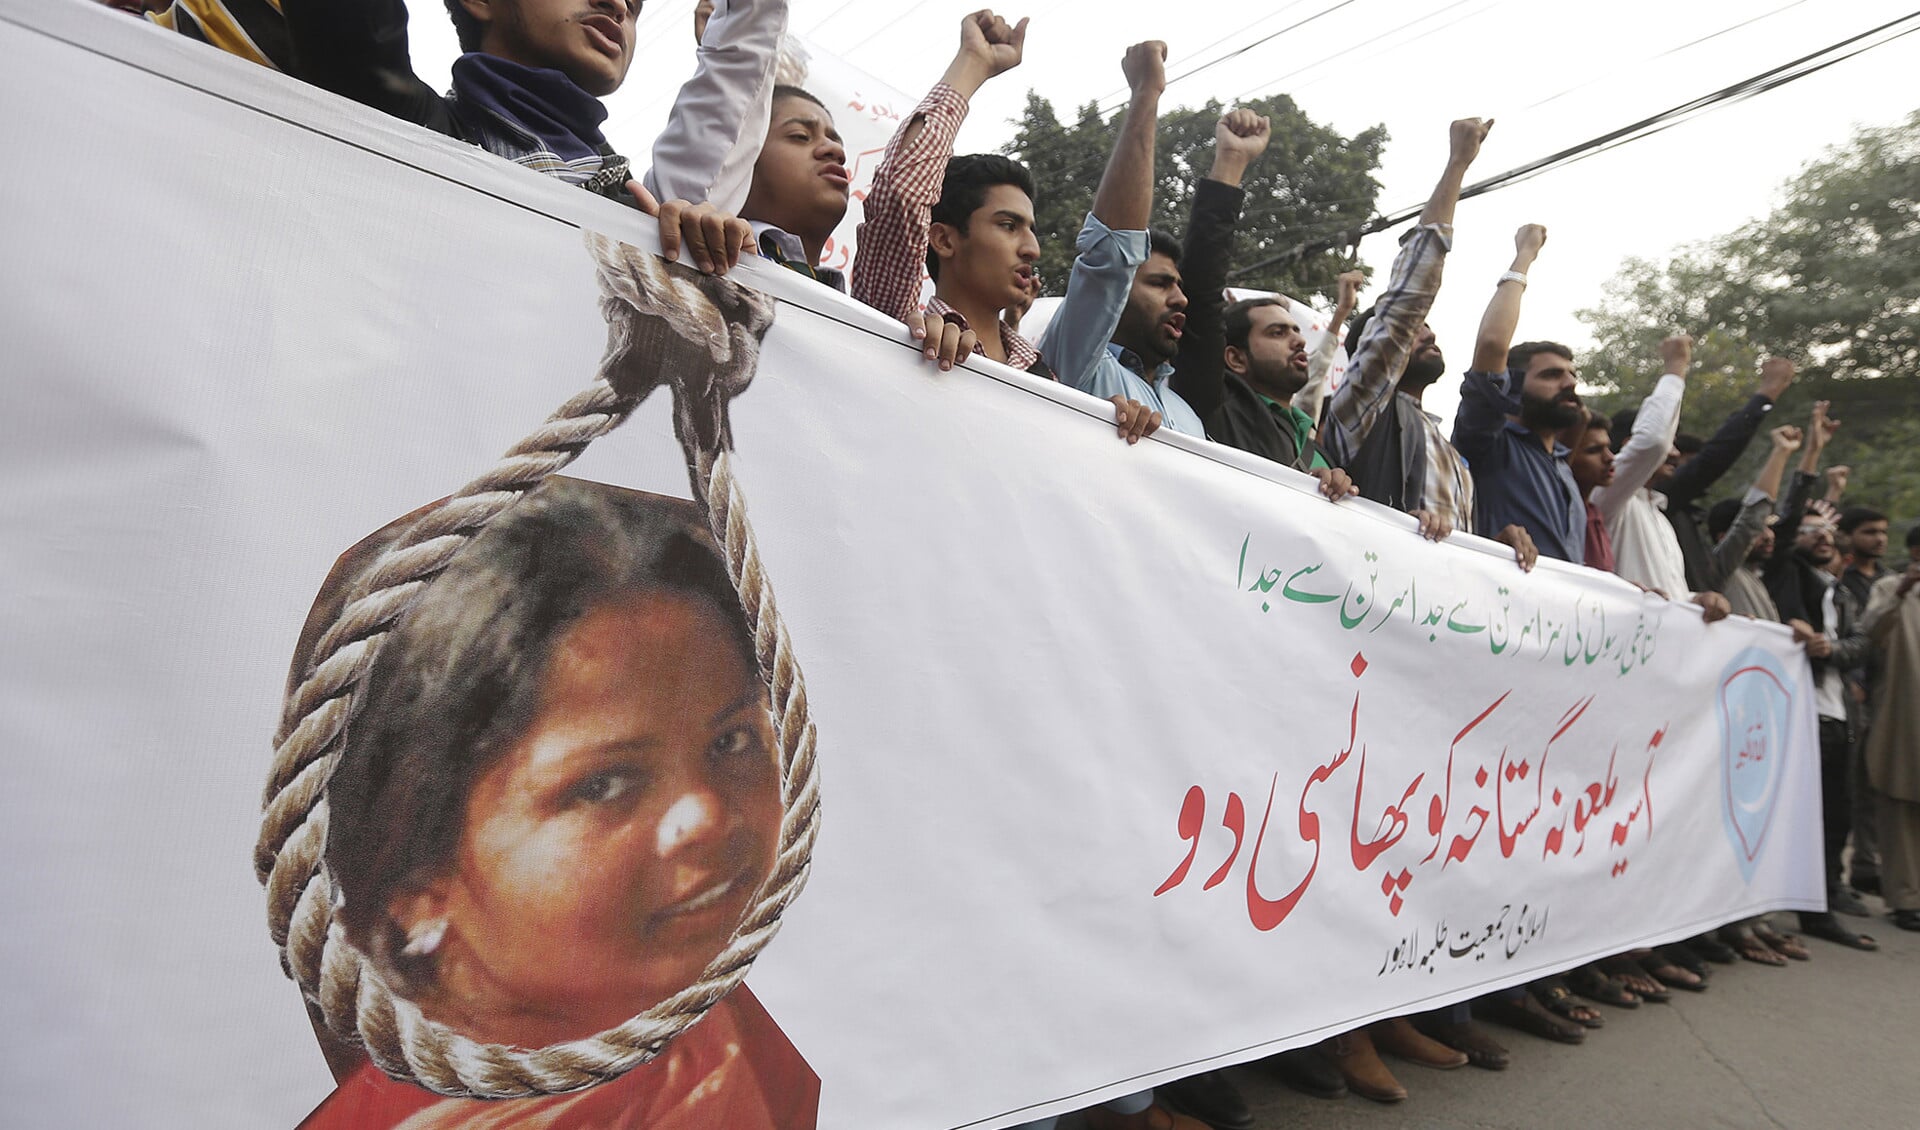 De vrijlating van Asia Bibi, die veroordeeld was voor blasfemie, leidde tot felle protesten van islamitische extremisten.